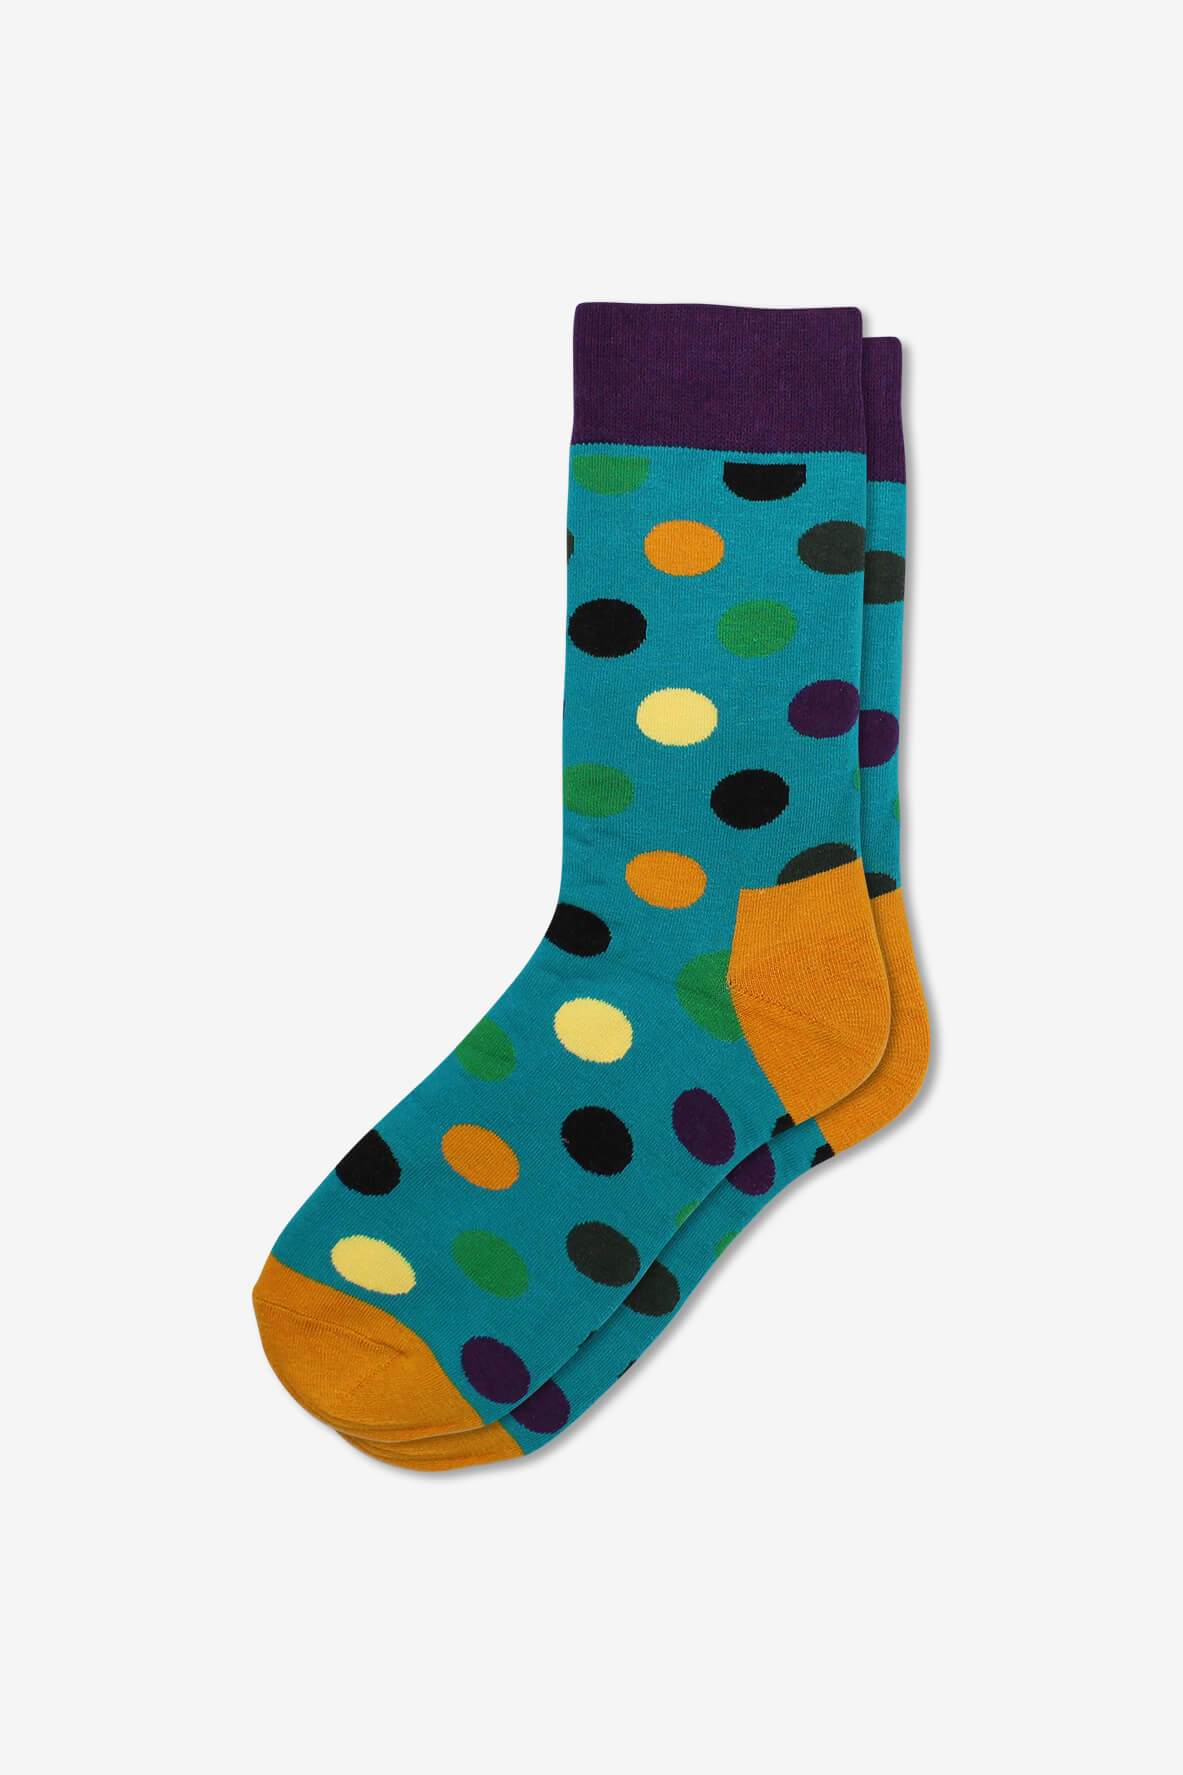 Socks IMG_5348, socks, GoTie